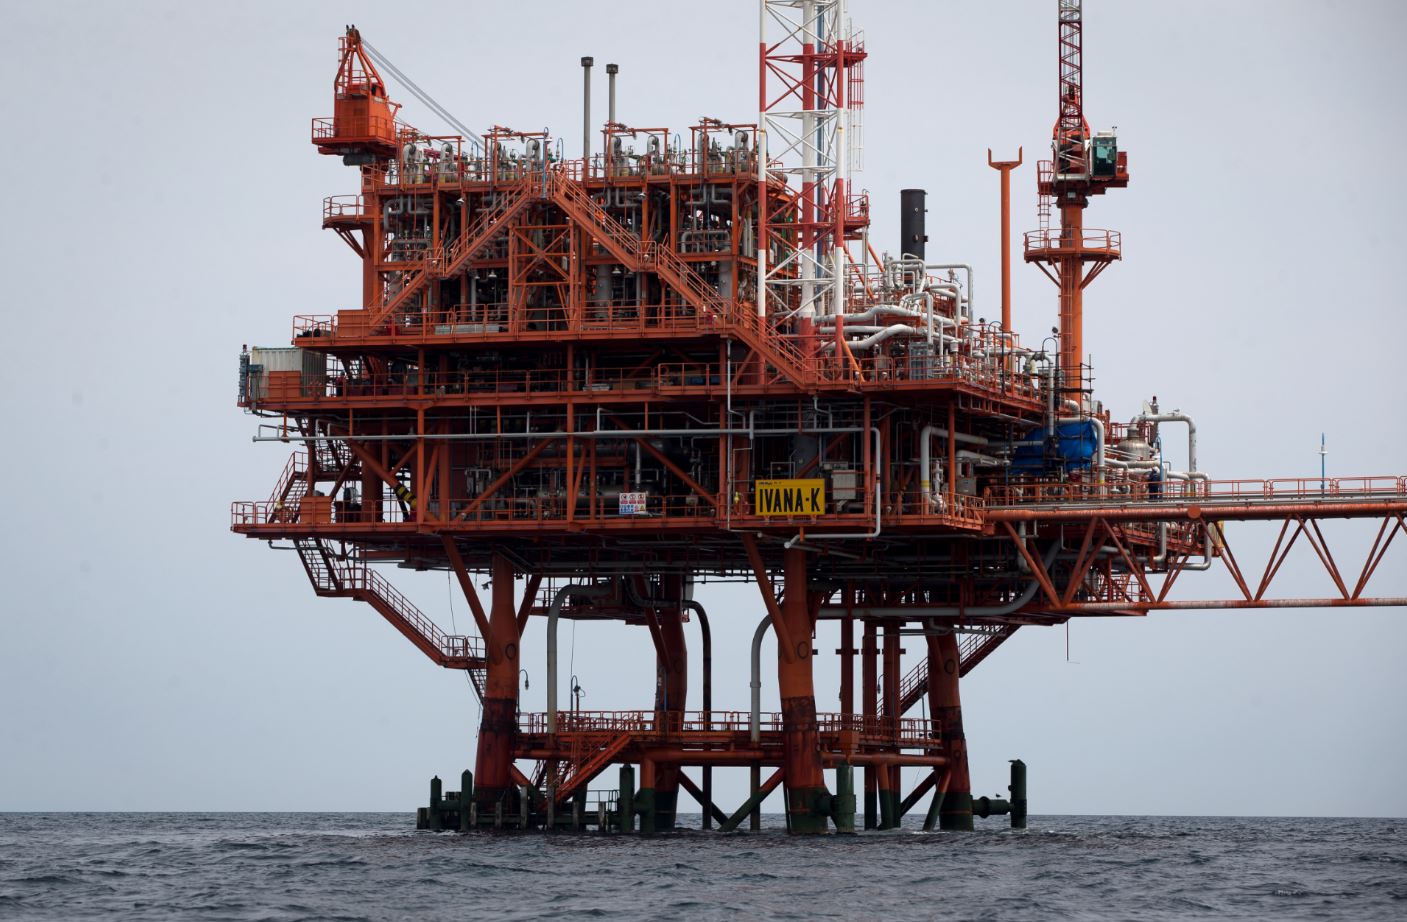 Precio del petróleo Brent sube, impactan sanciones a Irán